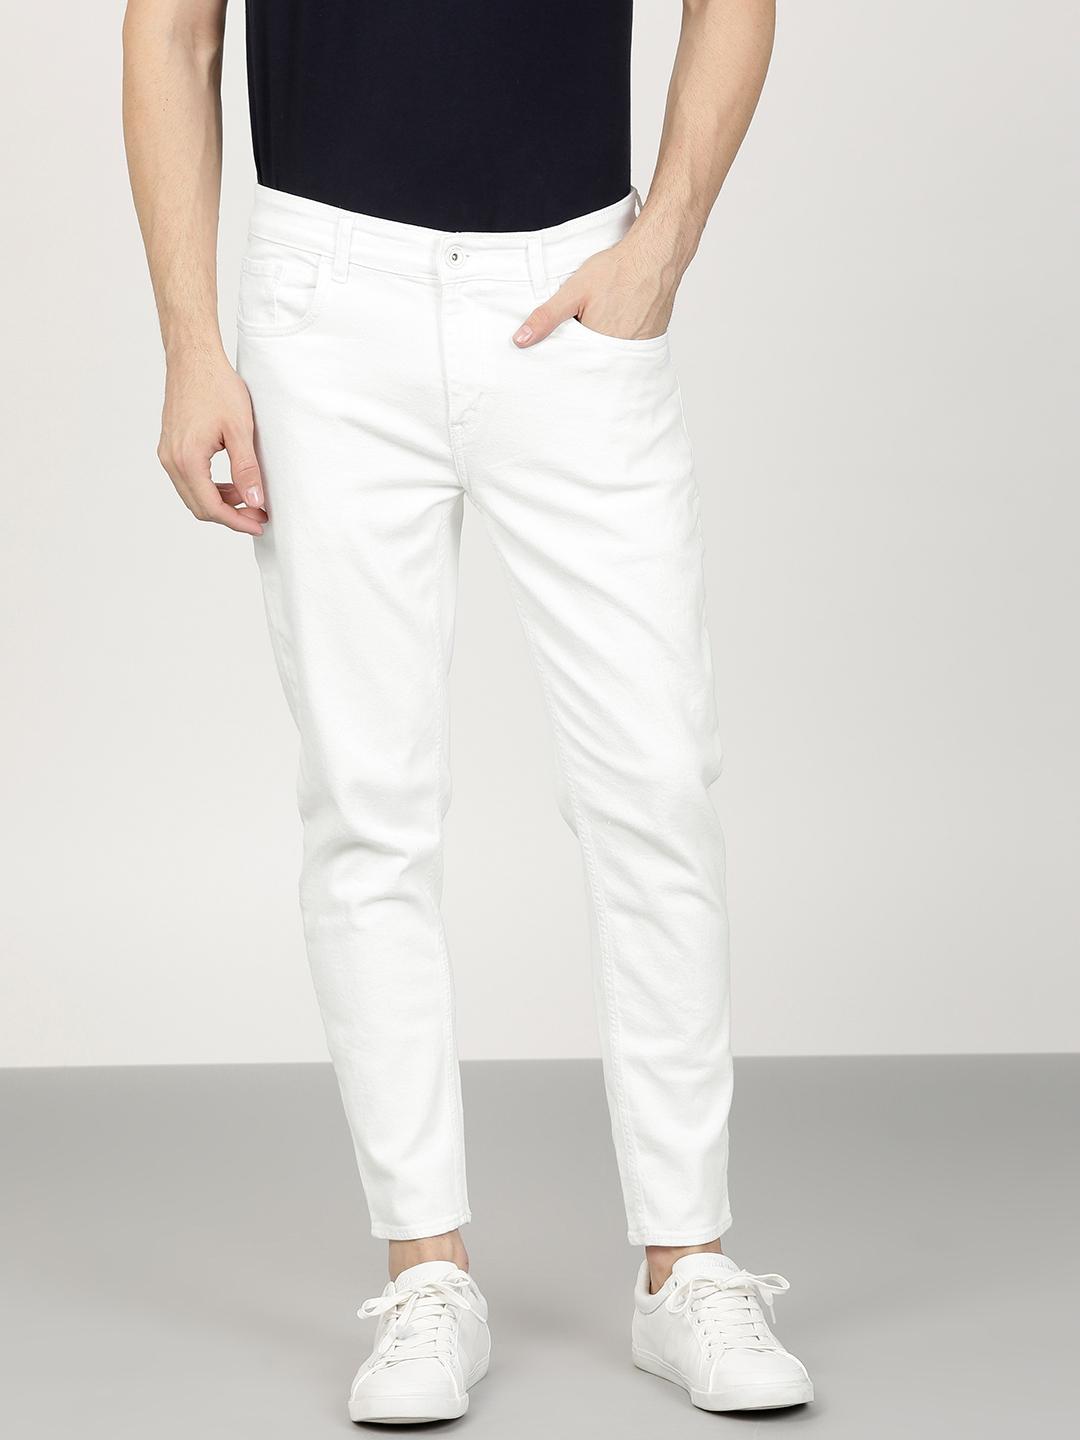 white jeans for men near me